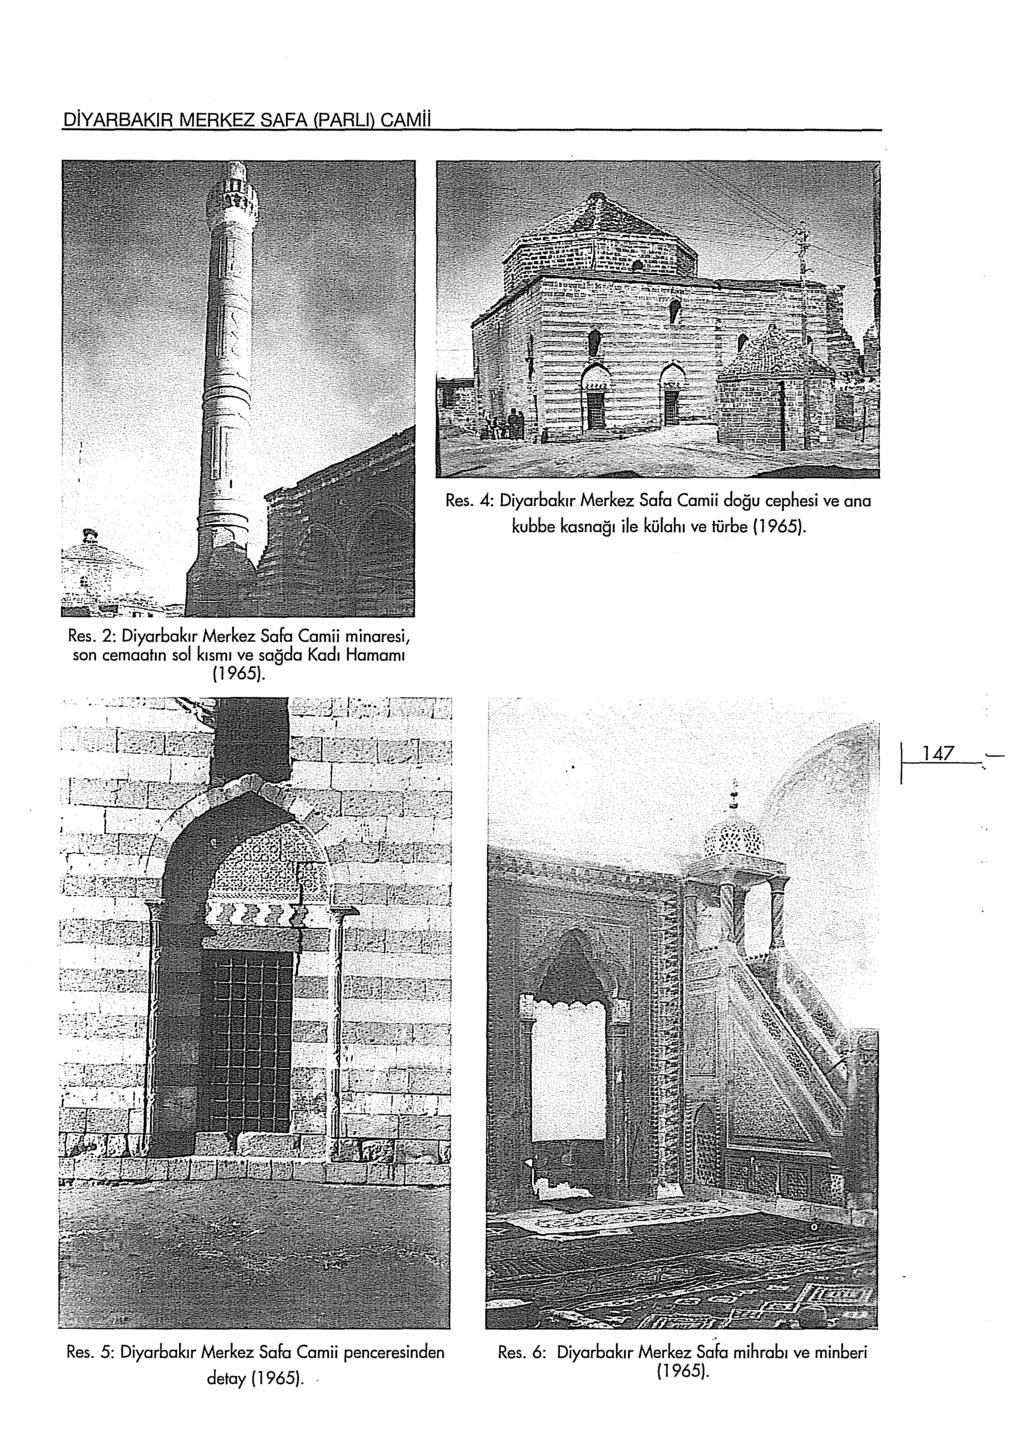 DiYARBAKlR MERKEZ SAFA (PARLI) CAMii Res. 4: Diyarbakır Merkez Safa Camii doğu cephesi ve ana kubbe kasnağı ile külahı ve türbe (1965). Res. 2: Diyarbakır Merkez Safa Camii minaresi, son cemaatın sol kısmı ve sağda Kadı Hamarnı (1965).